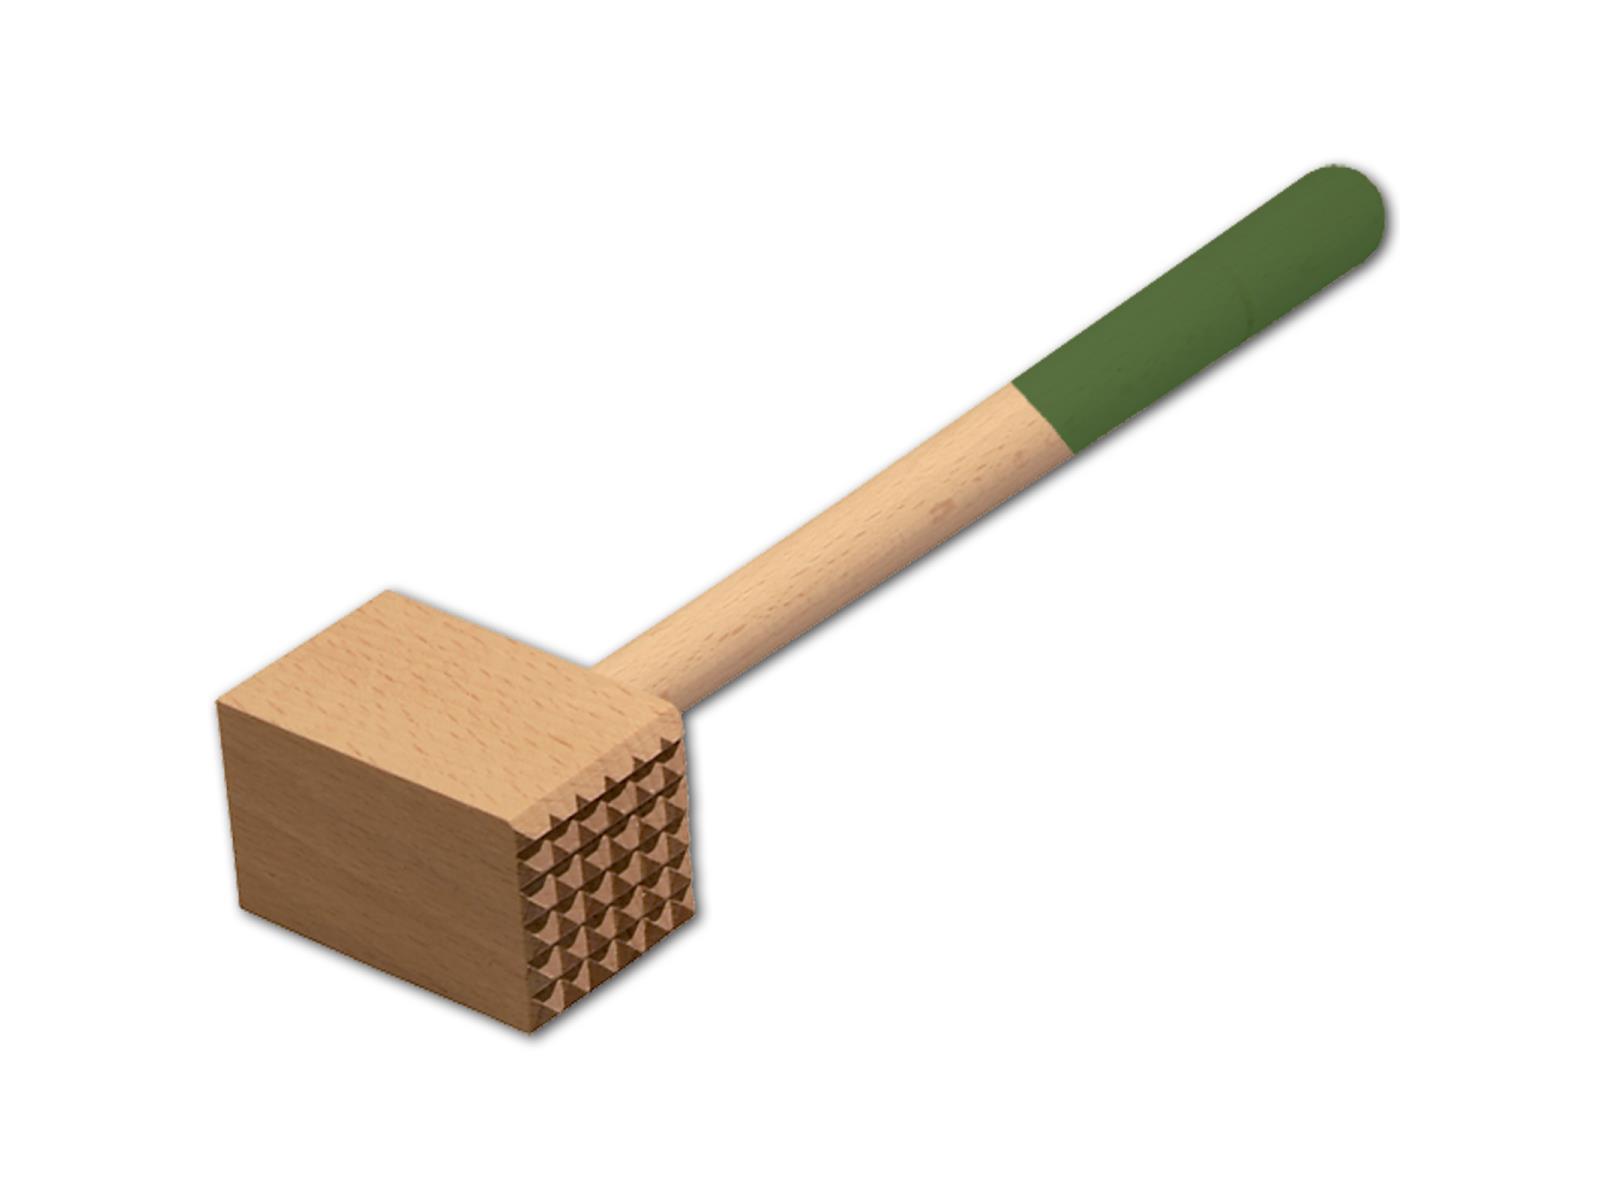 Fleischhammer, mit farbigem Griff, laubgrün, aus Holz 28 cm